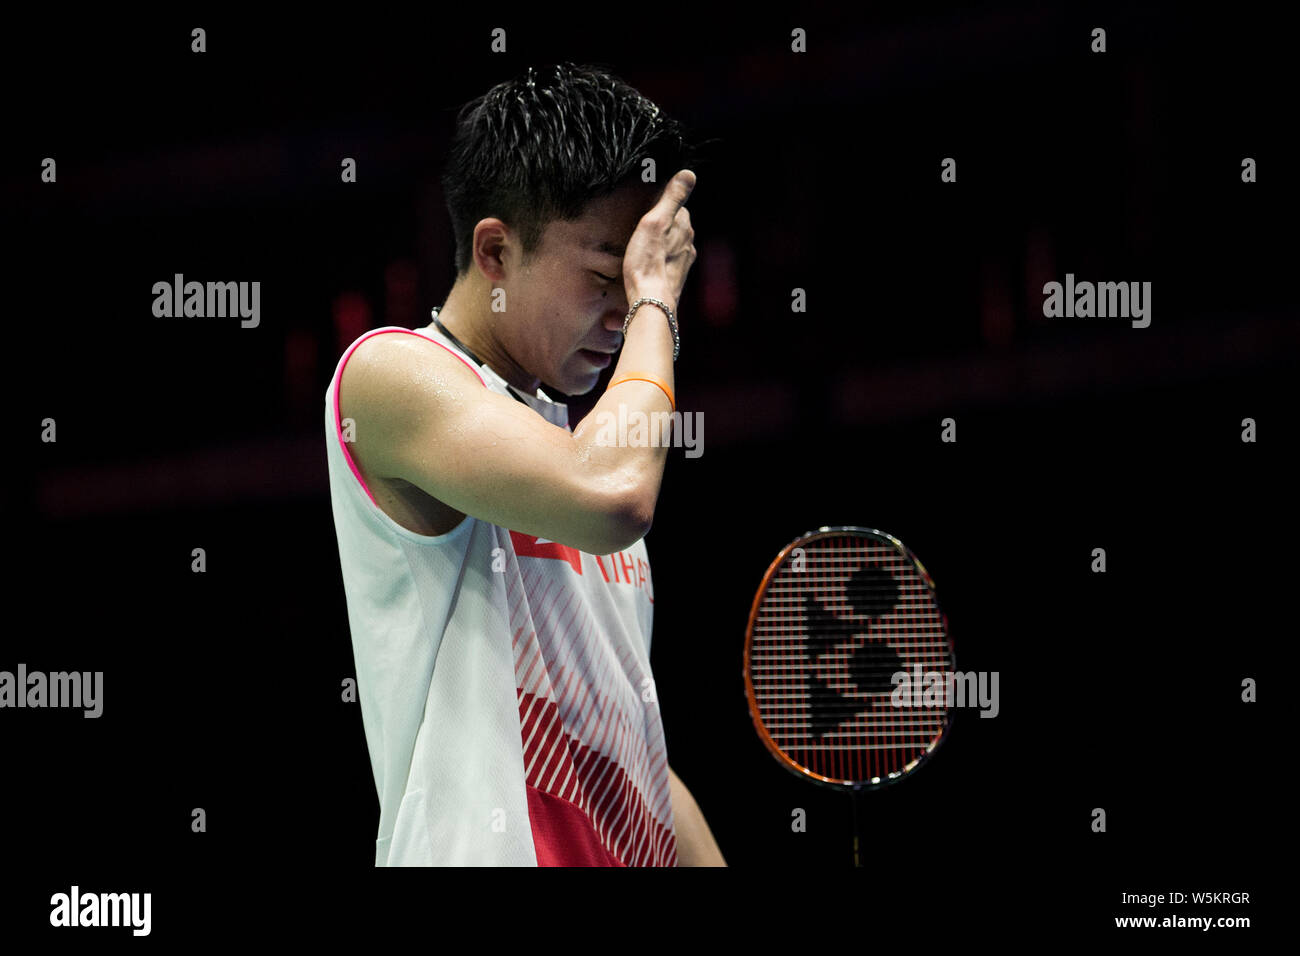 Kento Momota von Japan feiert nach dem Sieg über Shi Yuqi von China in ihrem letzten Spiel von singles Männer während der 2019 Badminton Asien Meisterschaften Stockfoto